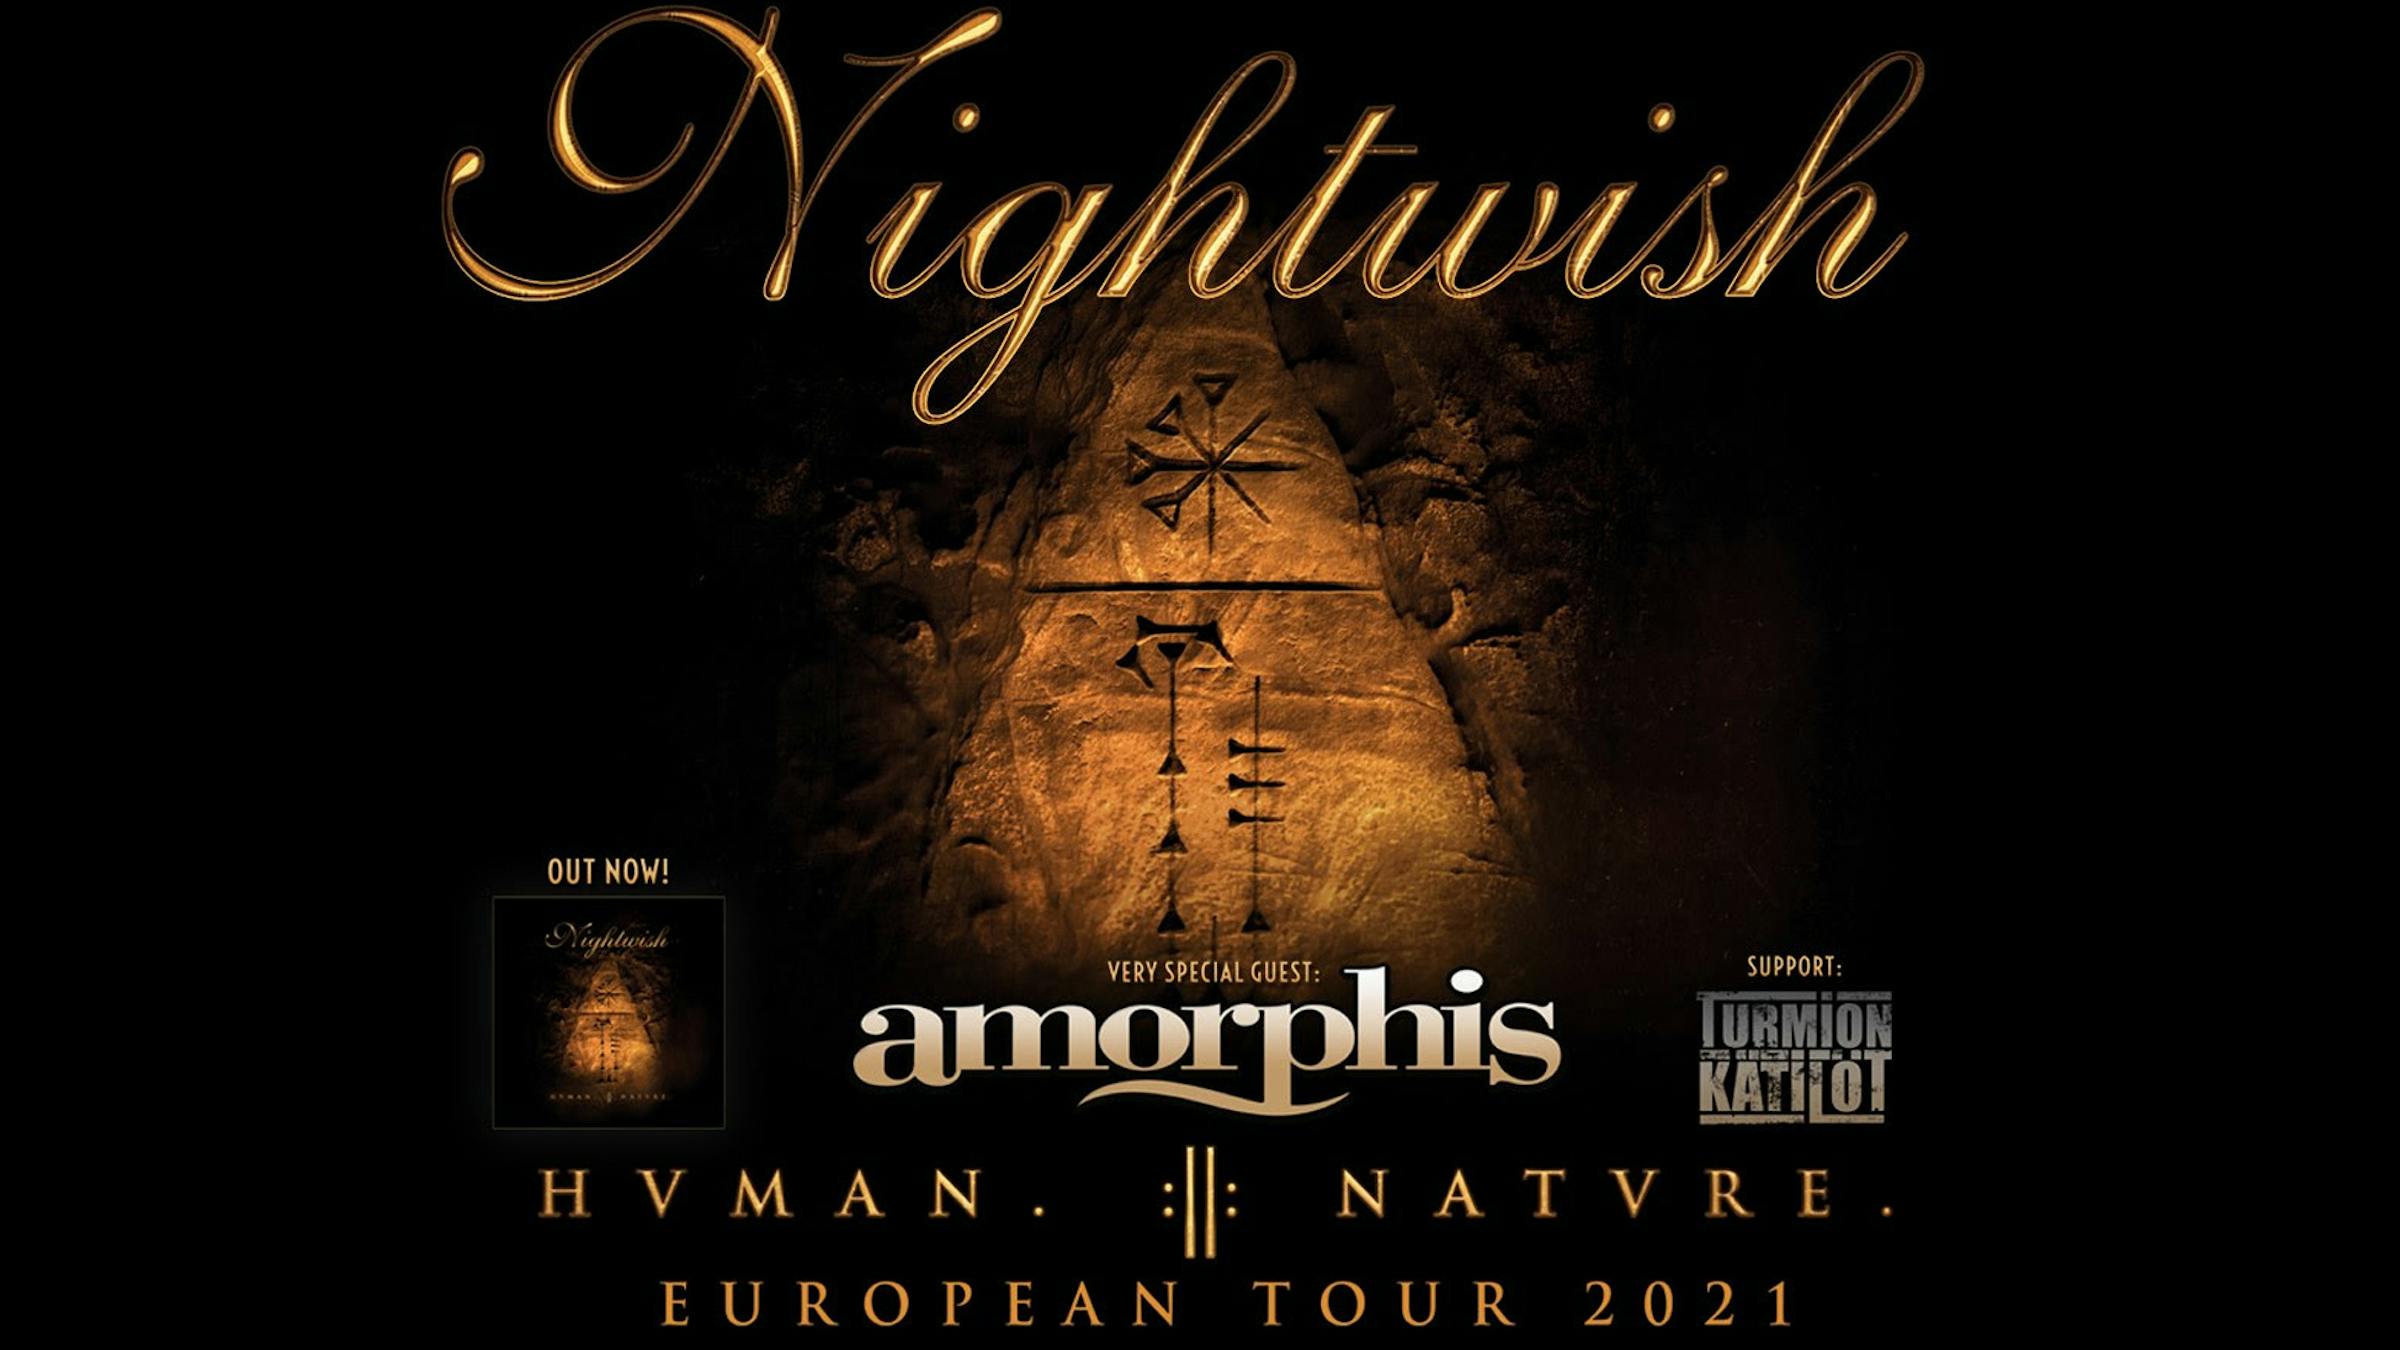 nightwish european tour 2021 london